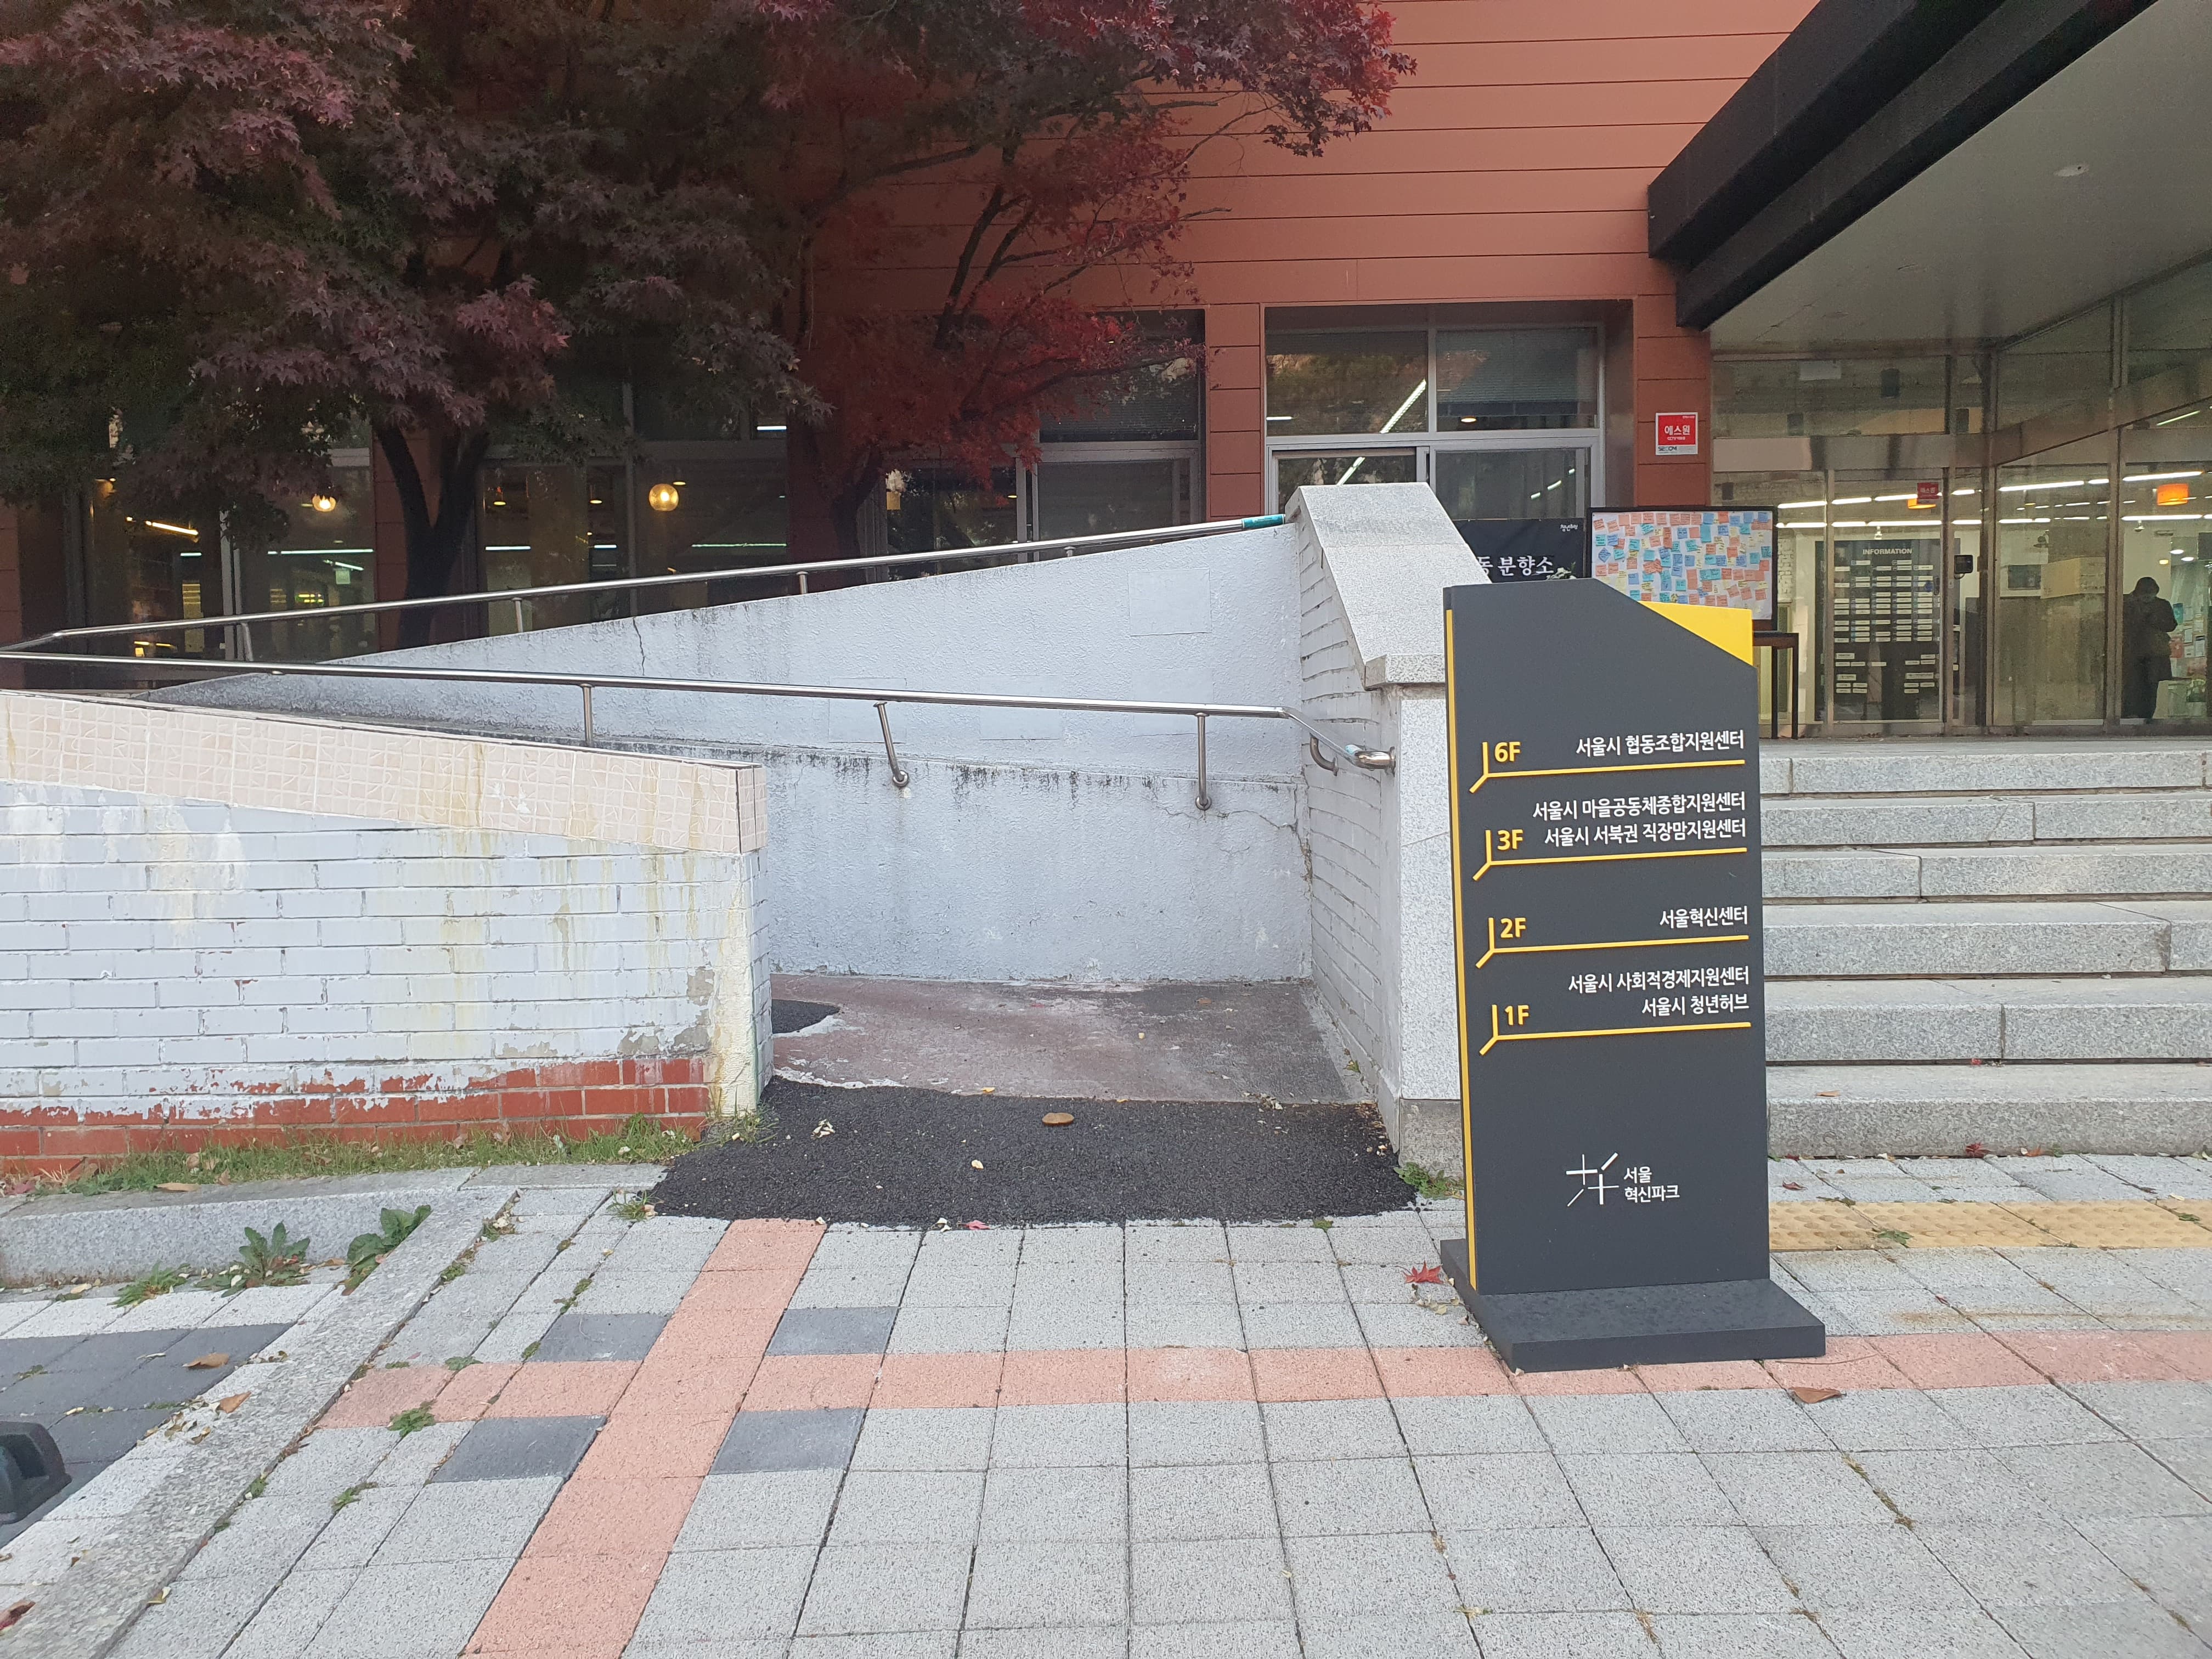 접근로/주출입구(미래청)0 : 경사와 계단이 설치된 미래청 건물 접근로